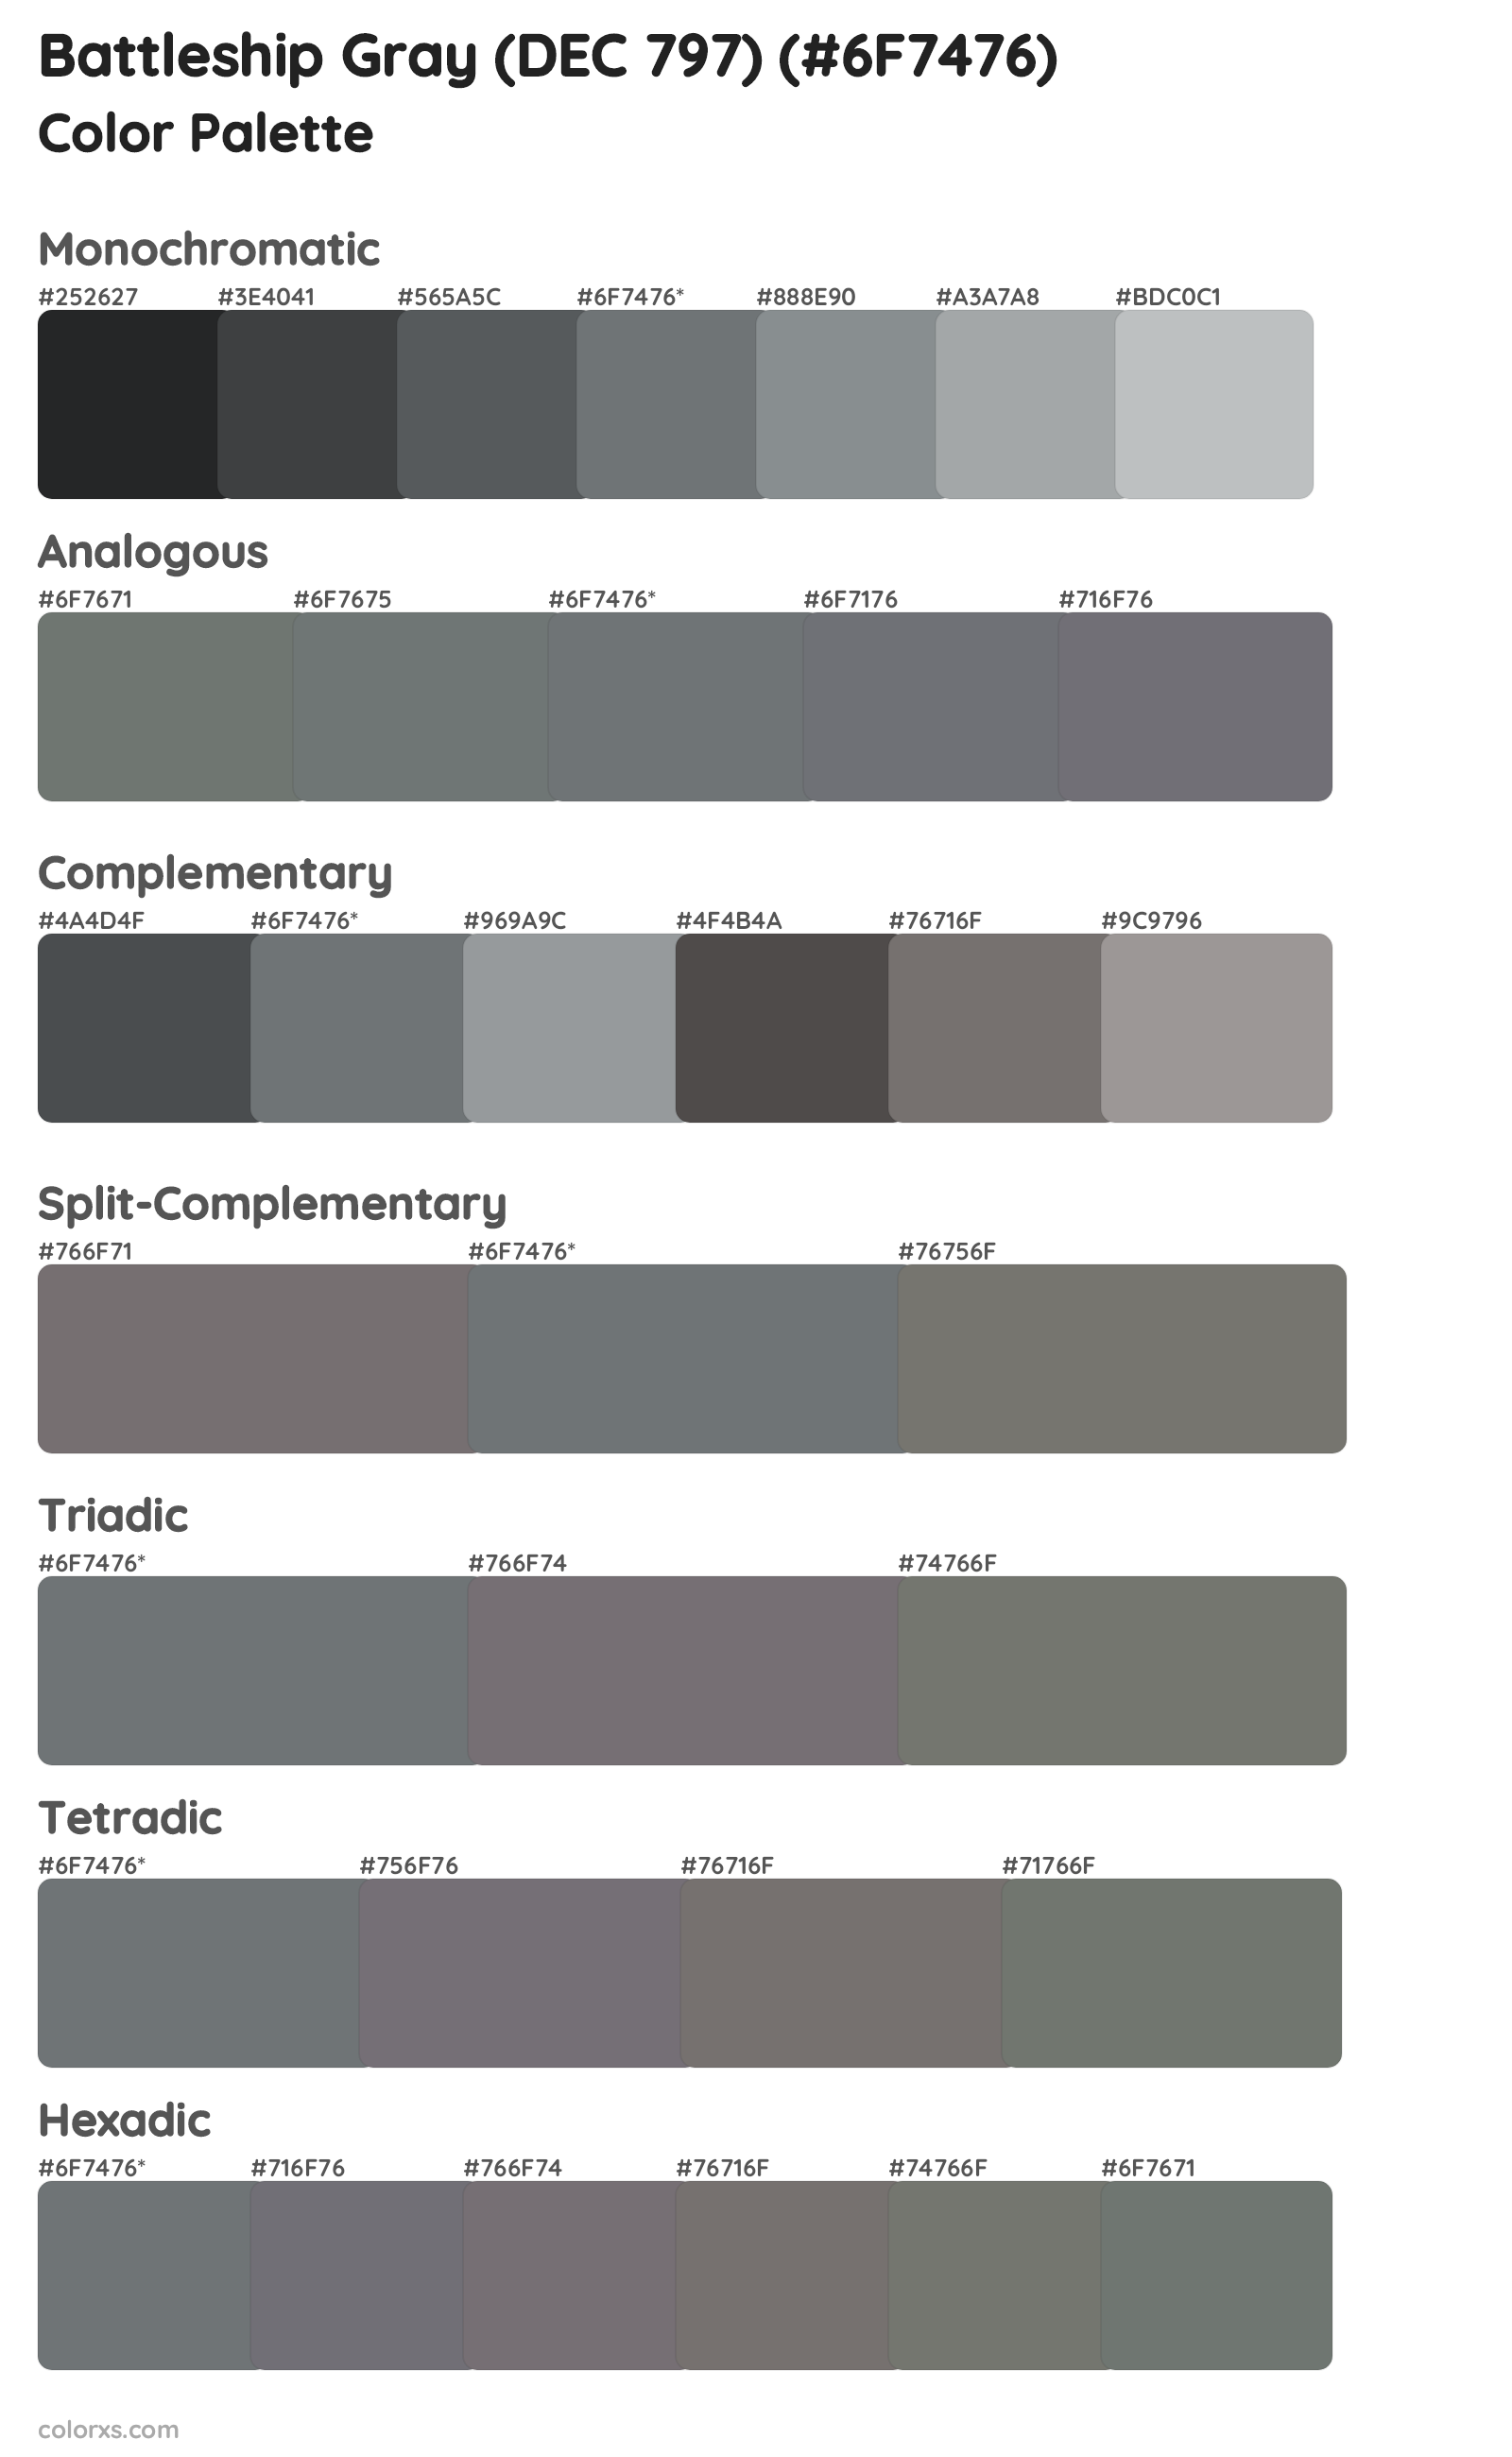 Battleship Gray (DEC 797) Color Scheme Palettes